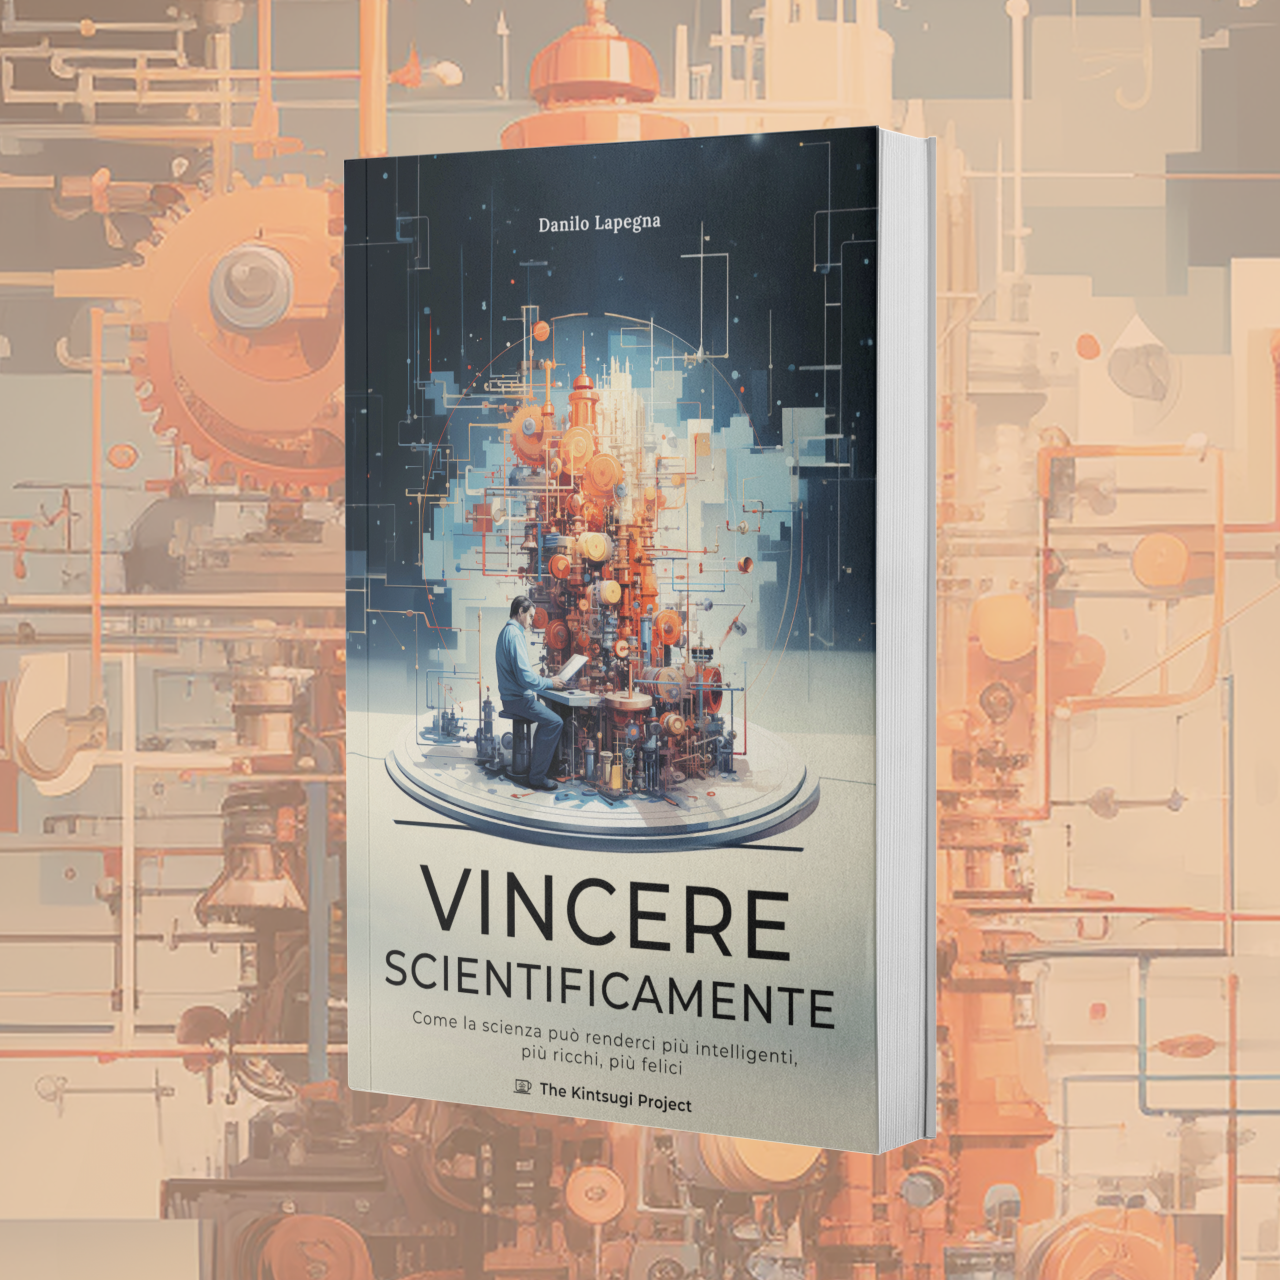 Vincere scientificamente - Danilo Lapegna - Kintsugi Books – The Kintsugi  Project